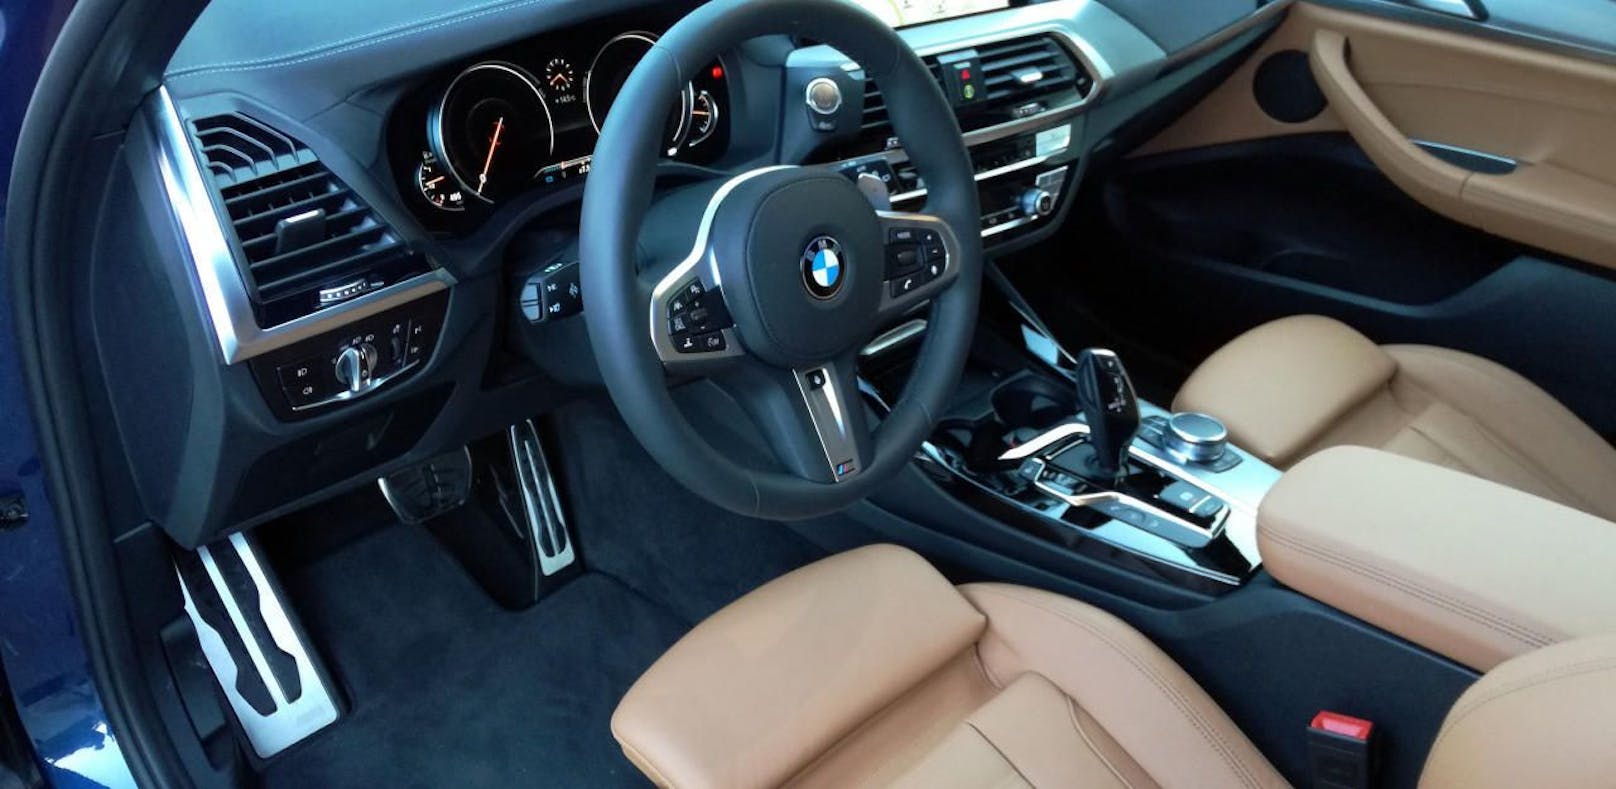 M-Paket & Teilautonom:  BMW rüstet neuen X3 auf